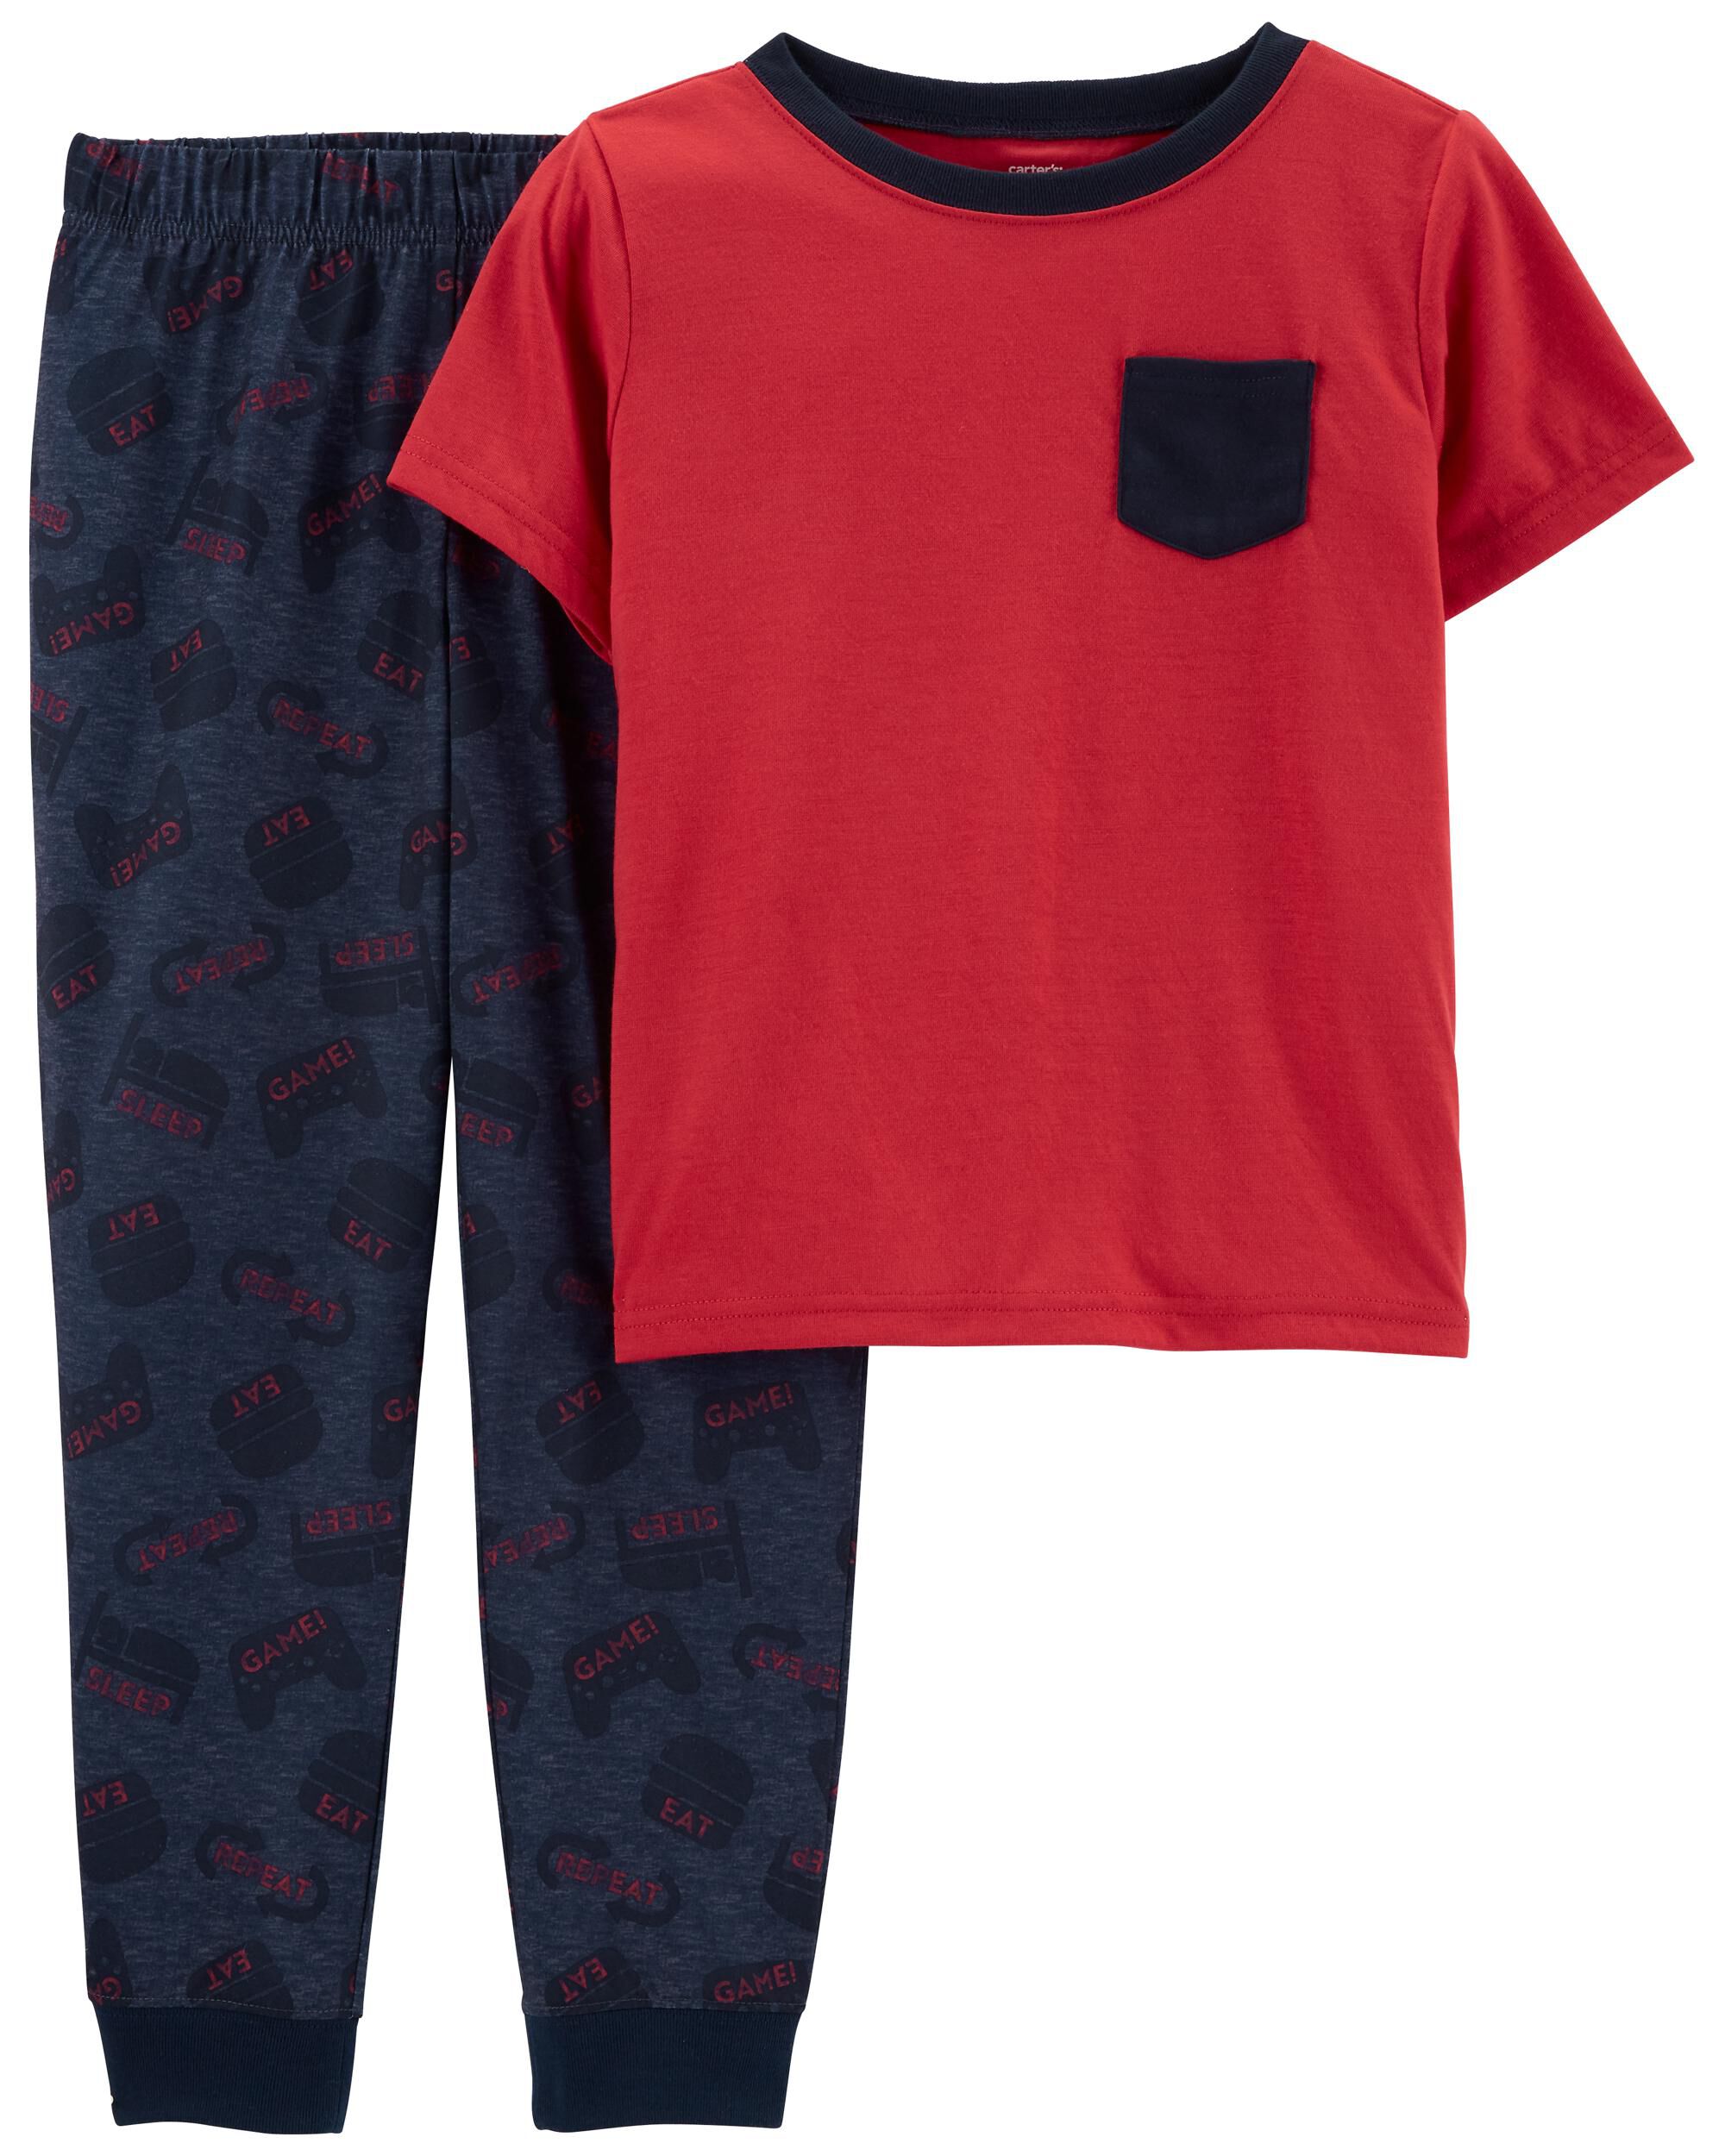 Carters Boys 2-piece Pajama Set